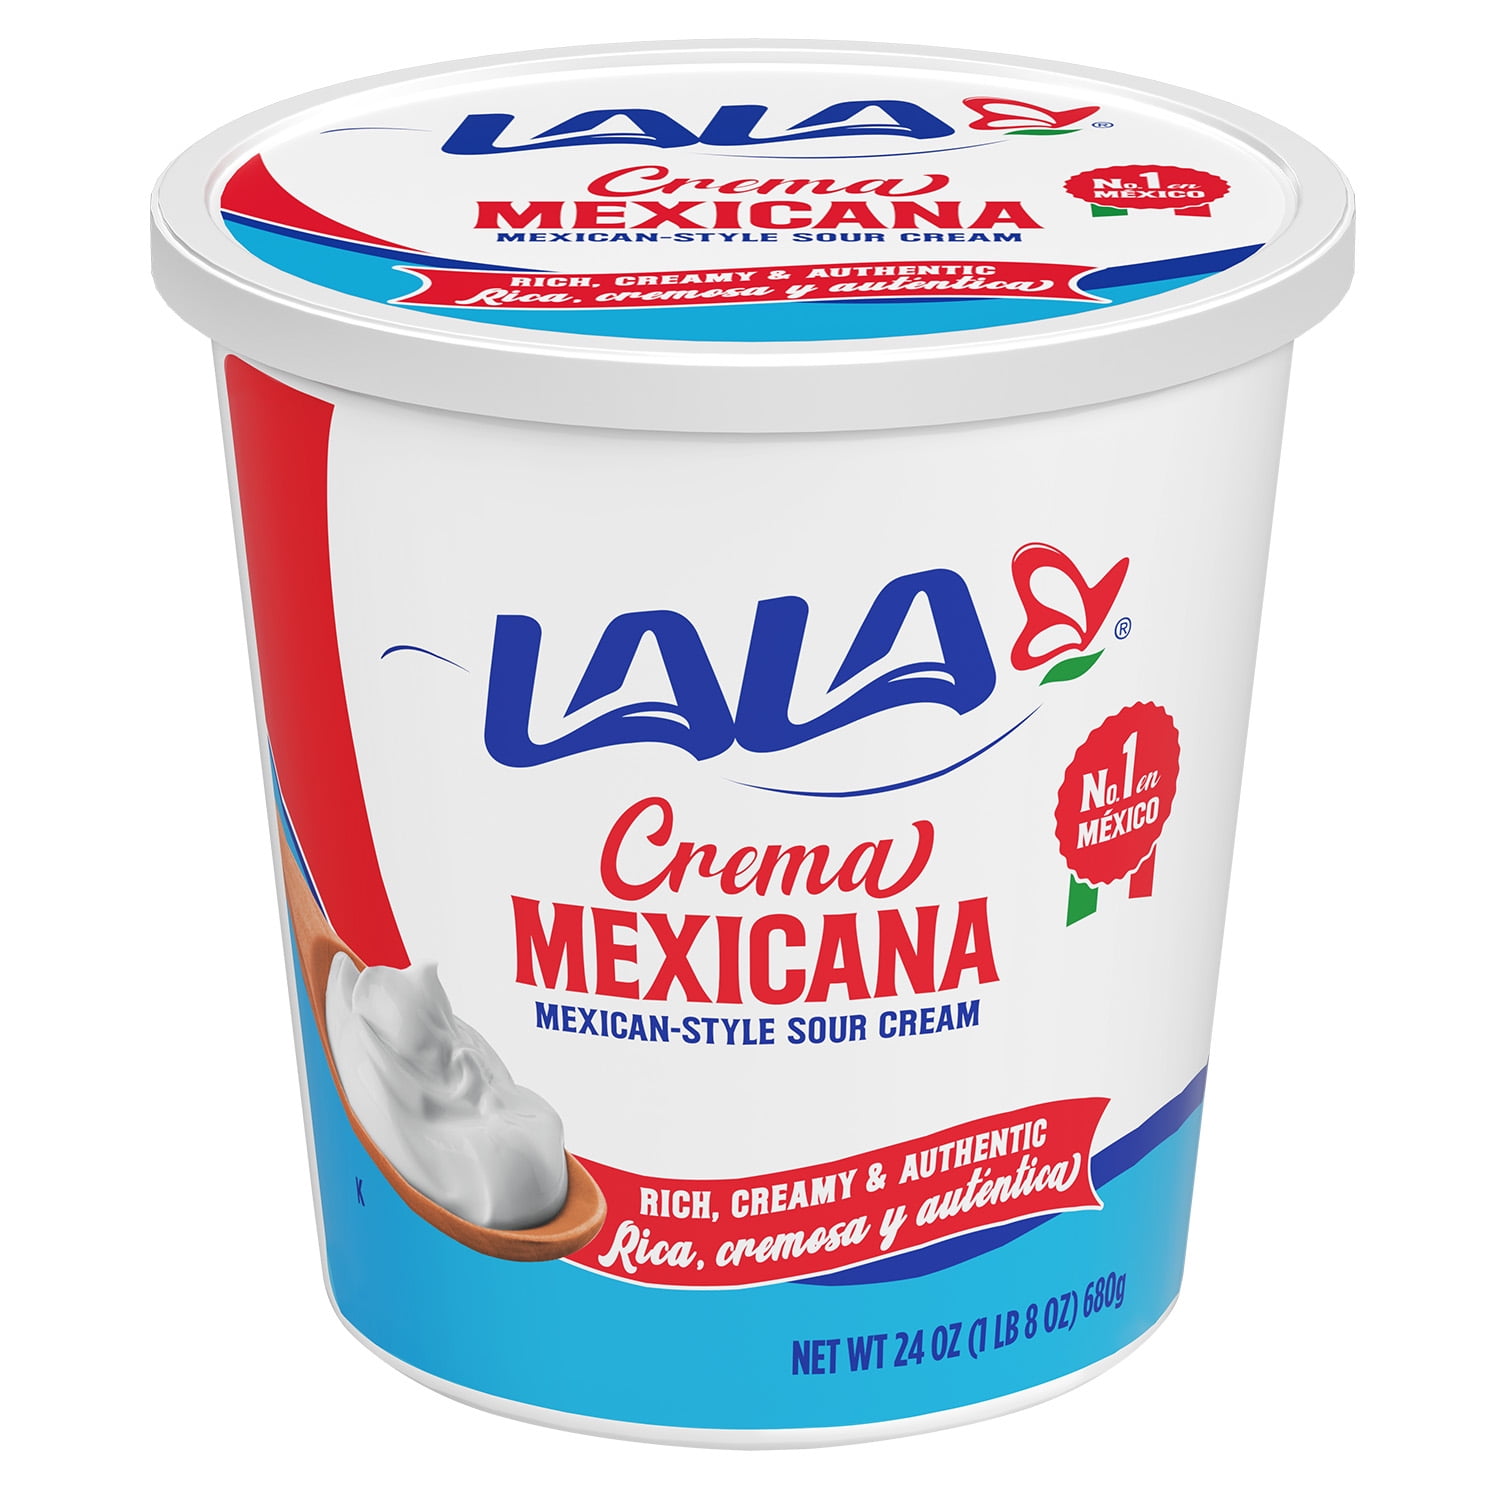 Crema Mexicana Sour Cream, 24 oz Walmart.com